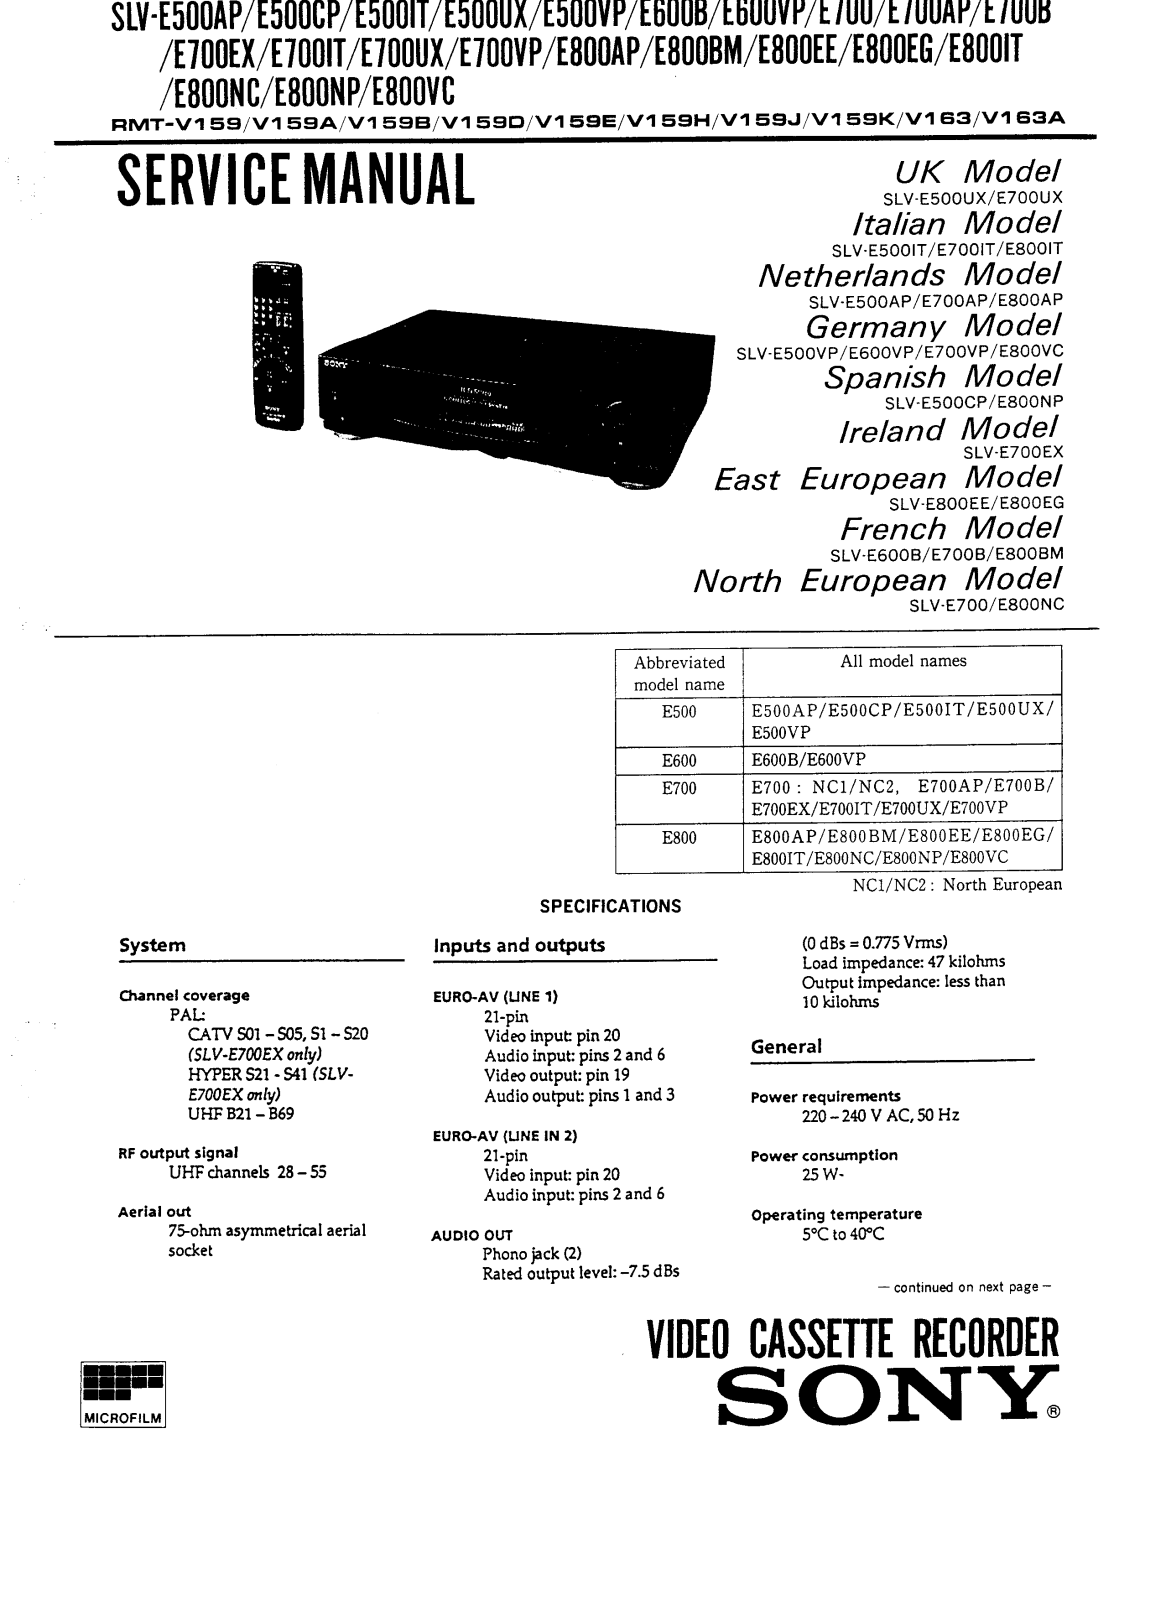 SONY SLV-E500AP Service Manual